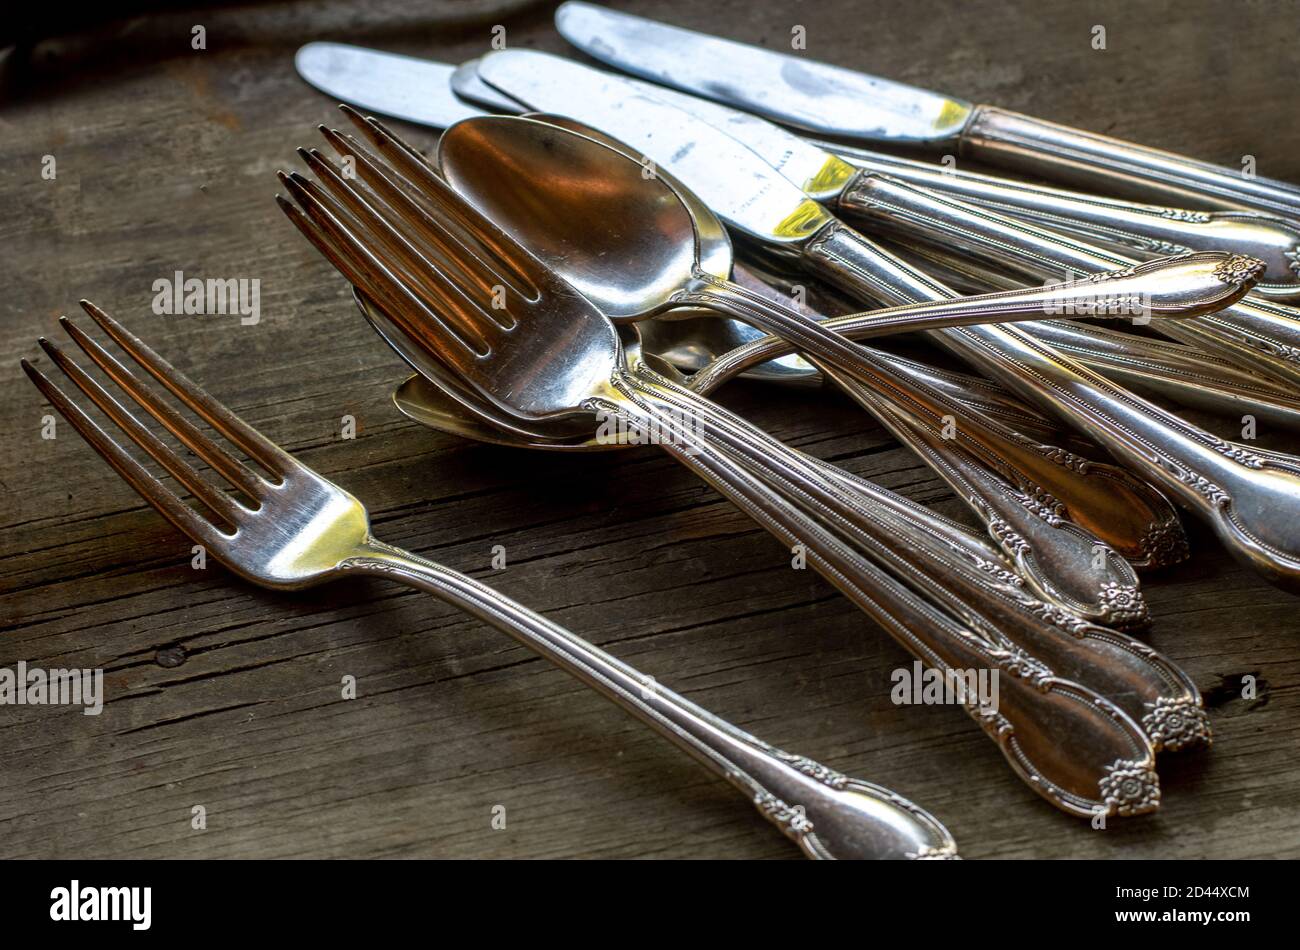 Ausgefallene Gabeln, Messer und Löffel sind auf einem Tisch aufgestellt, um  zum Abendessen verteilt zu werden Stockfotografie - Alamy